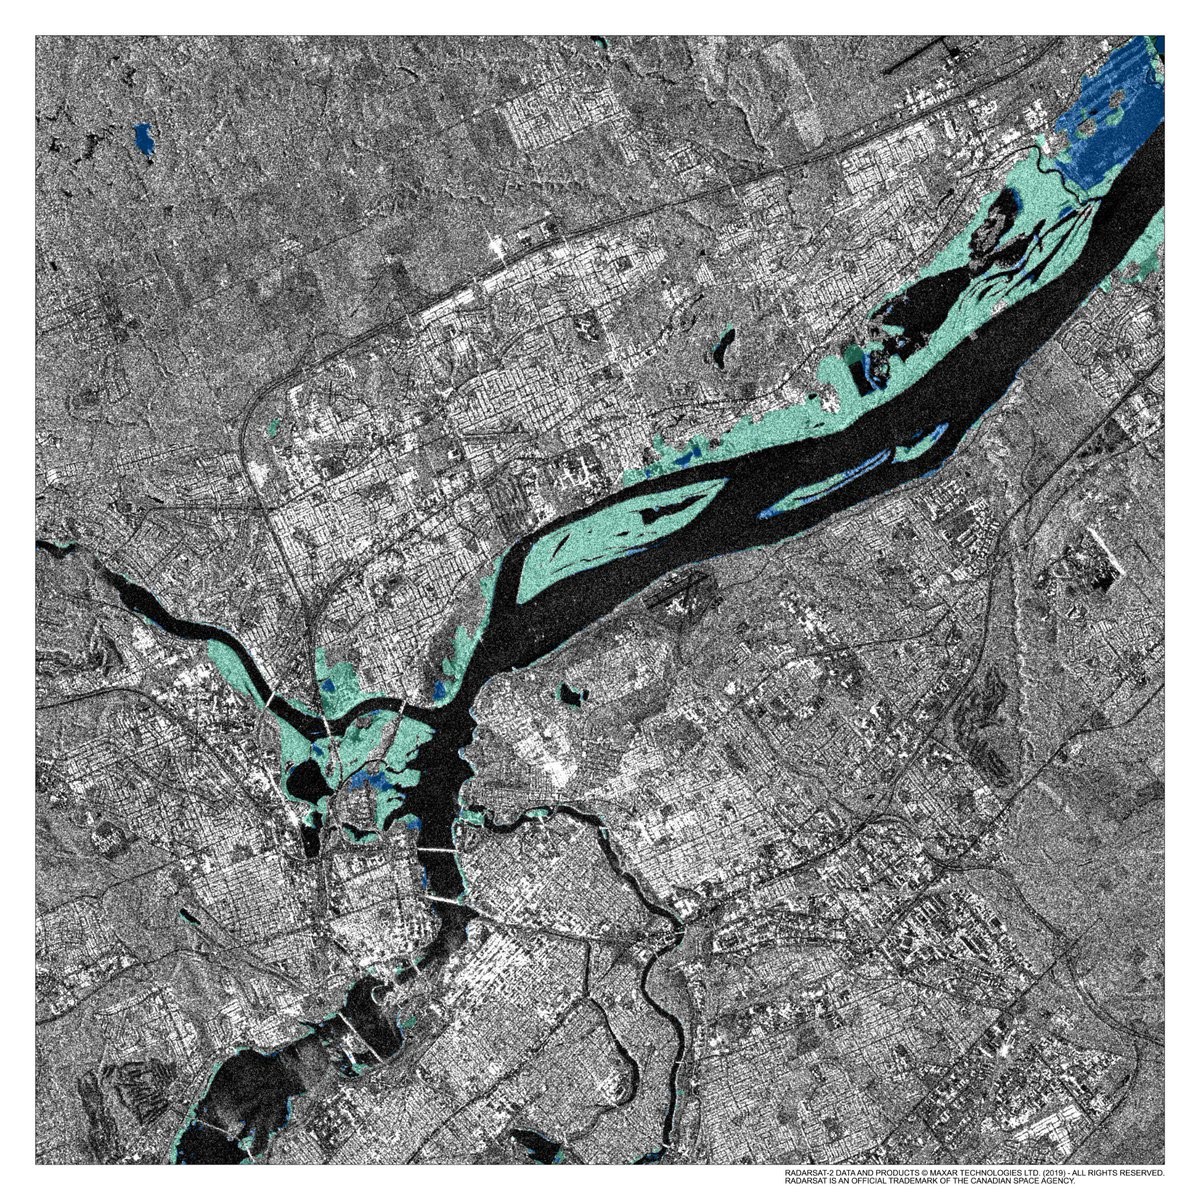 Satellite image showing ground flooding